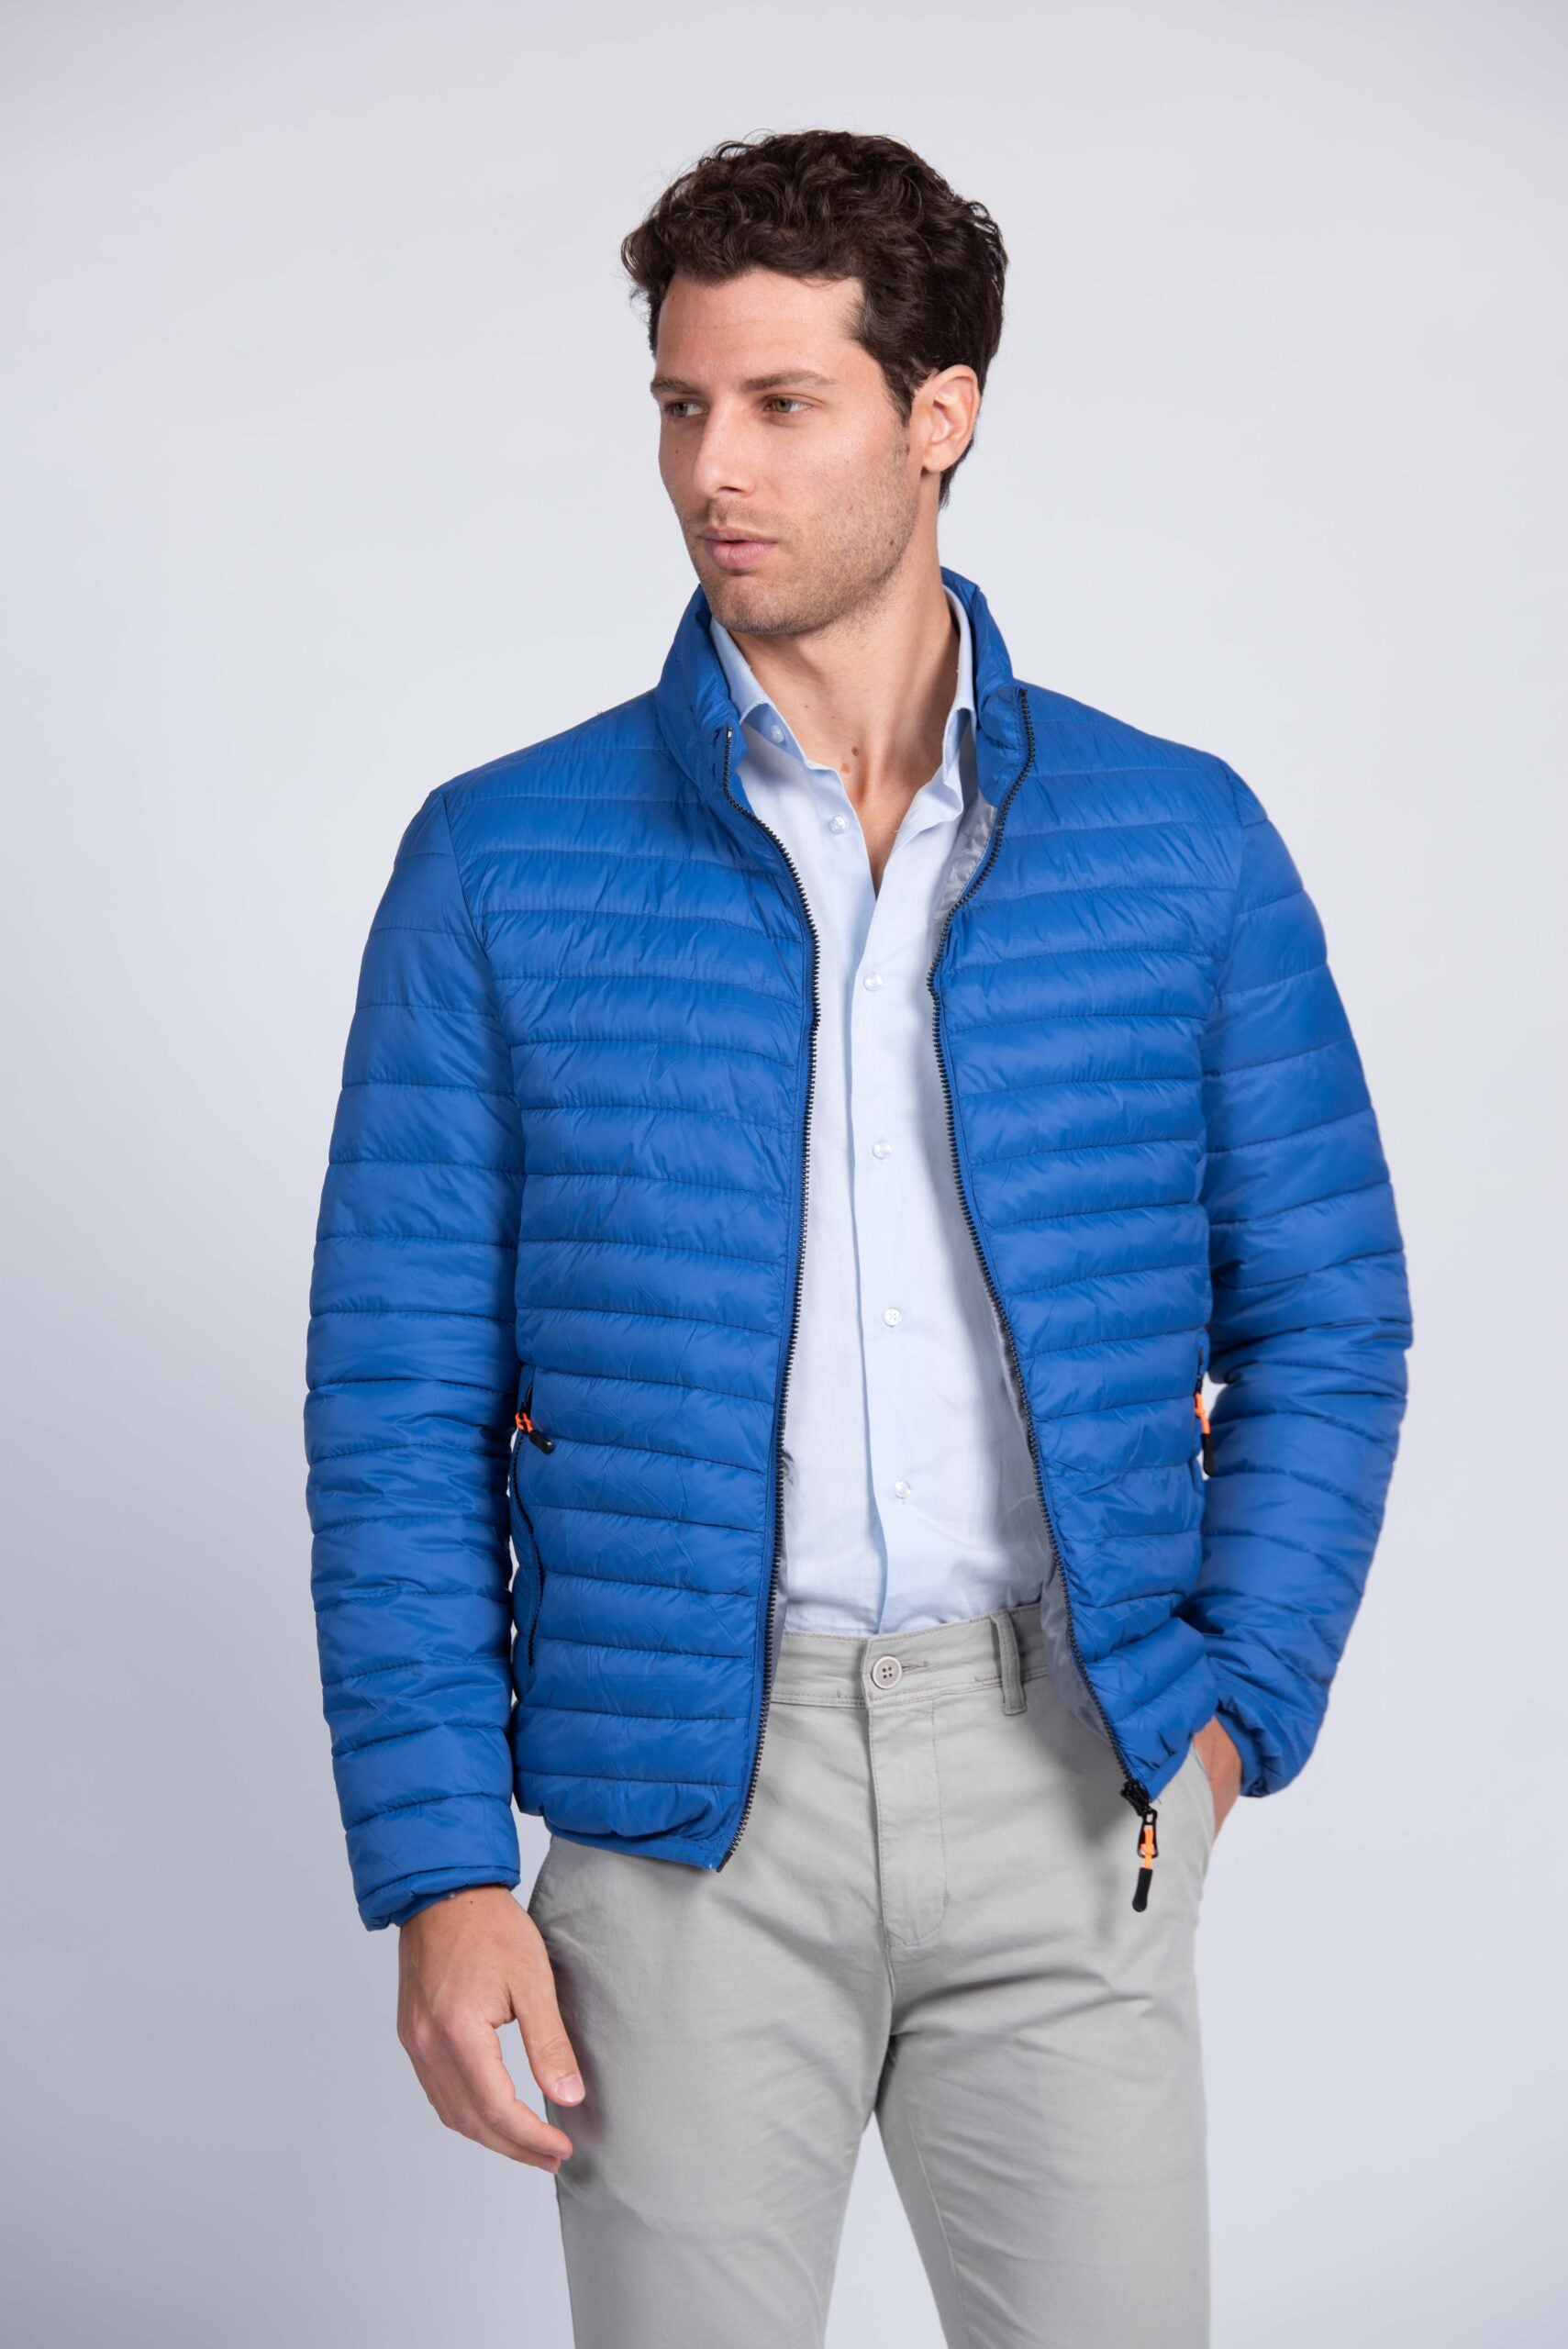 Bluette Spring jacket